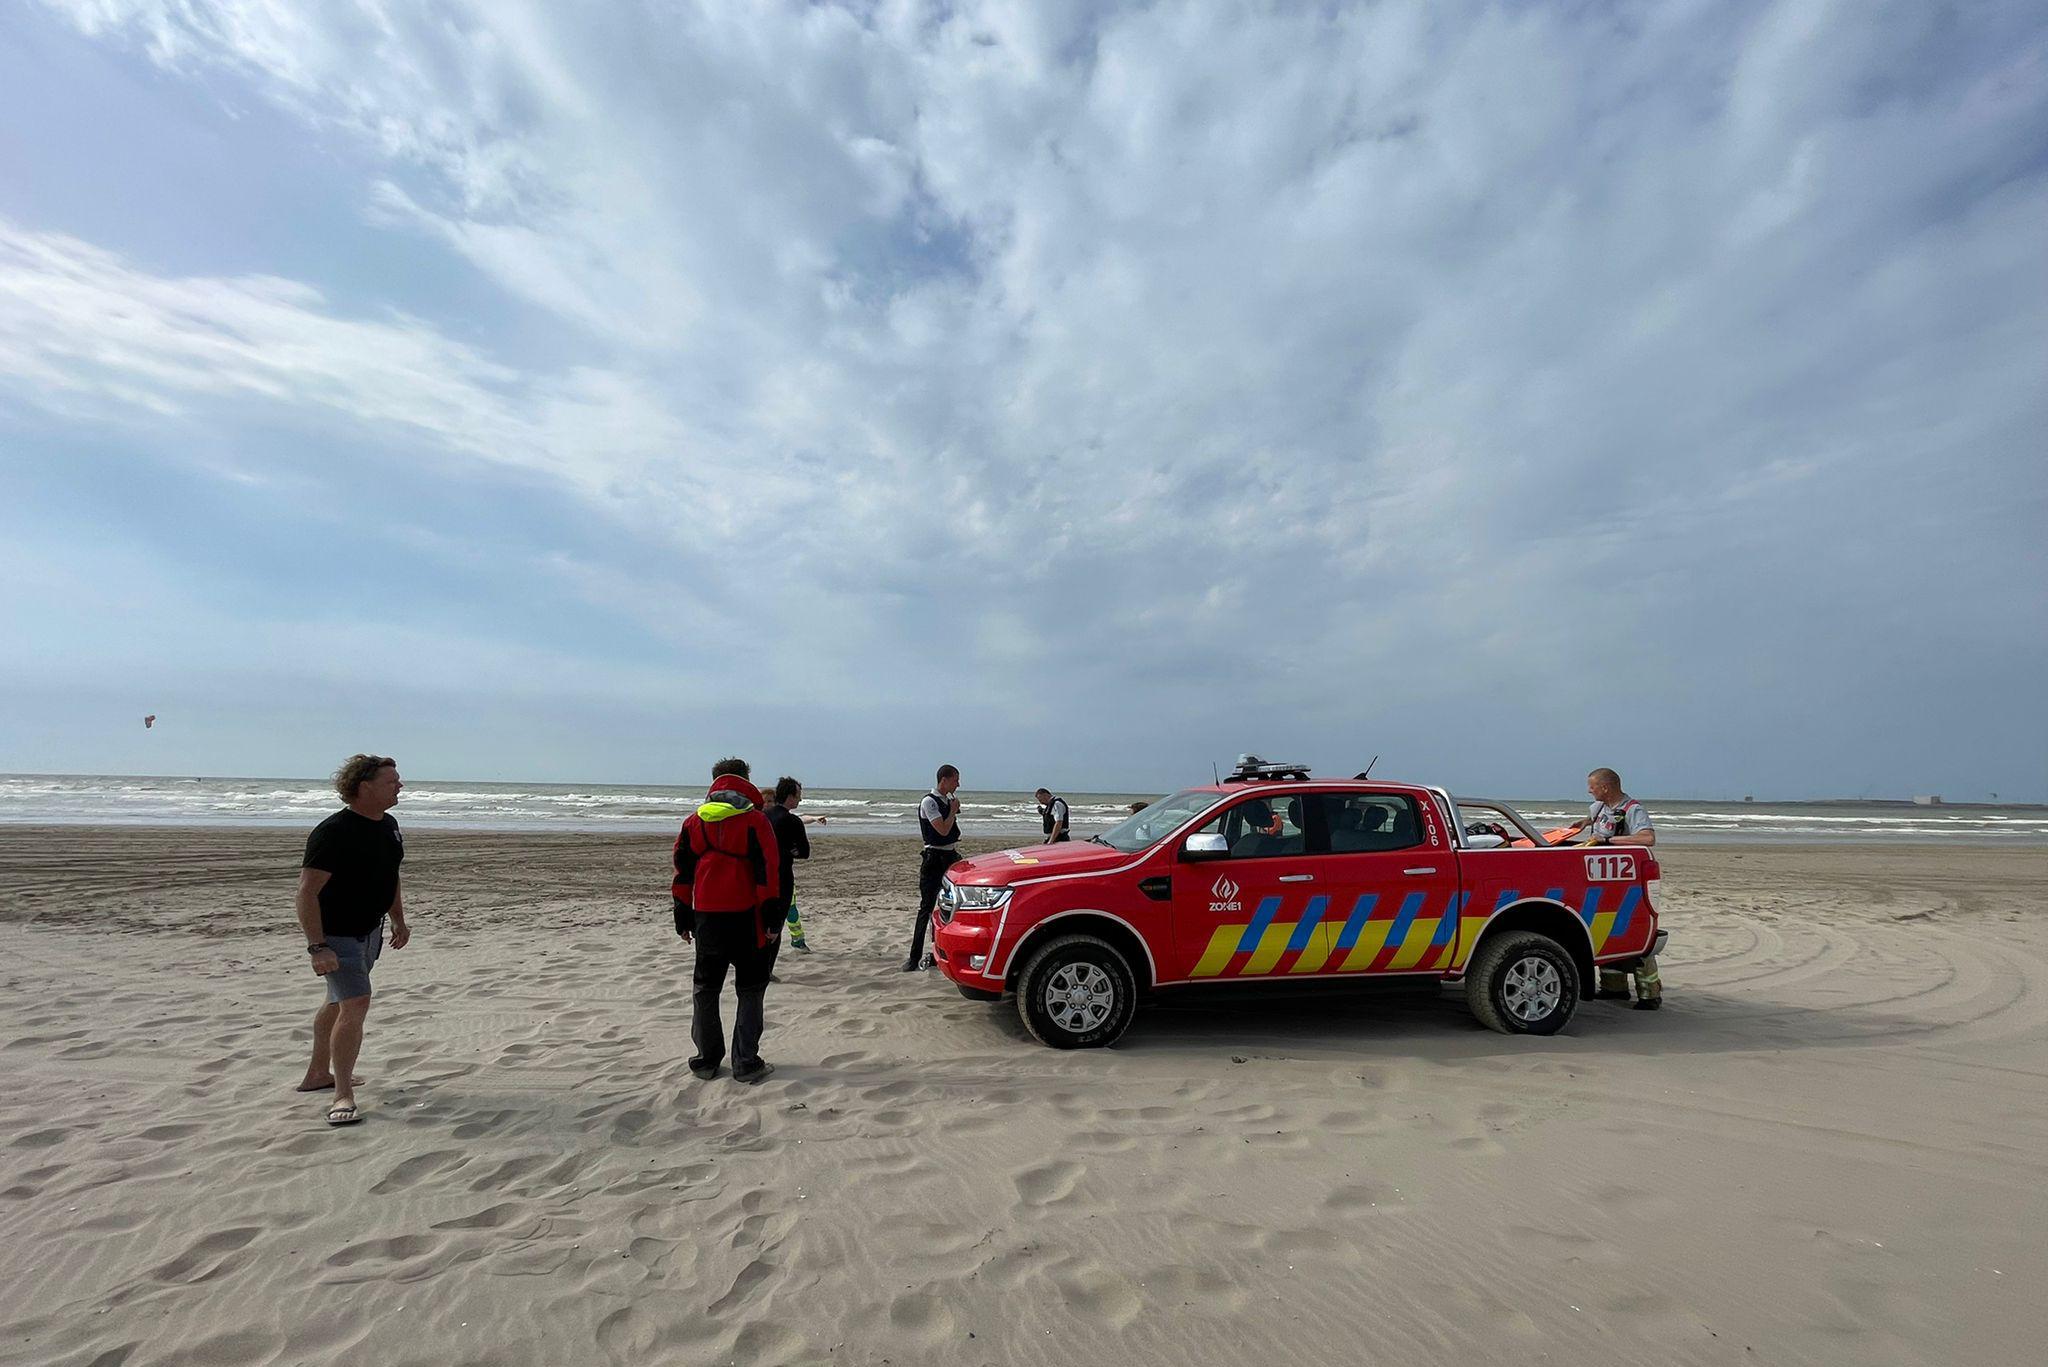 Twee zwemmers overleden tussen Zeebrugge en Blankenberge: “Nu in de zee gaan zonder redders is je doodsvonnis tekenen”